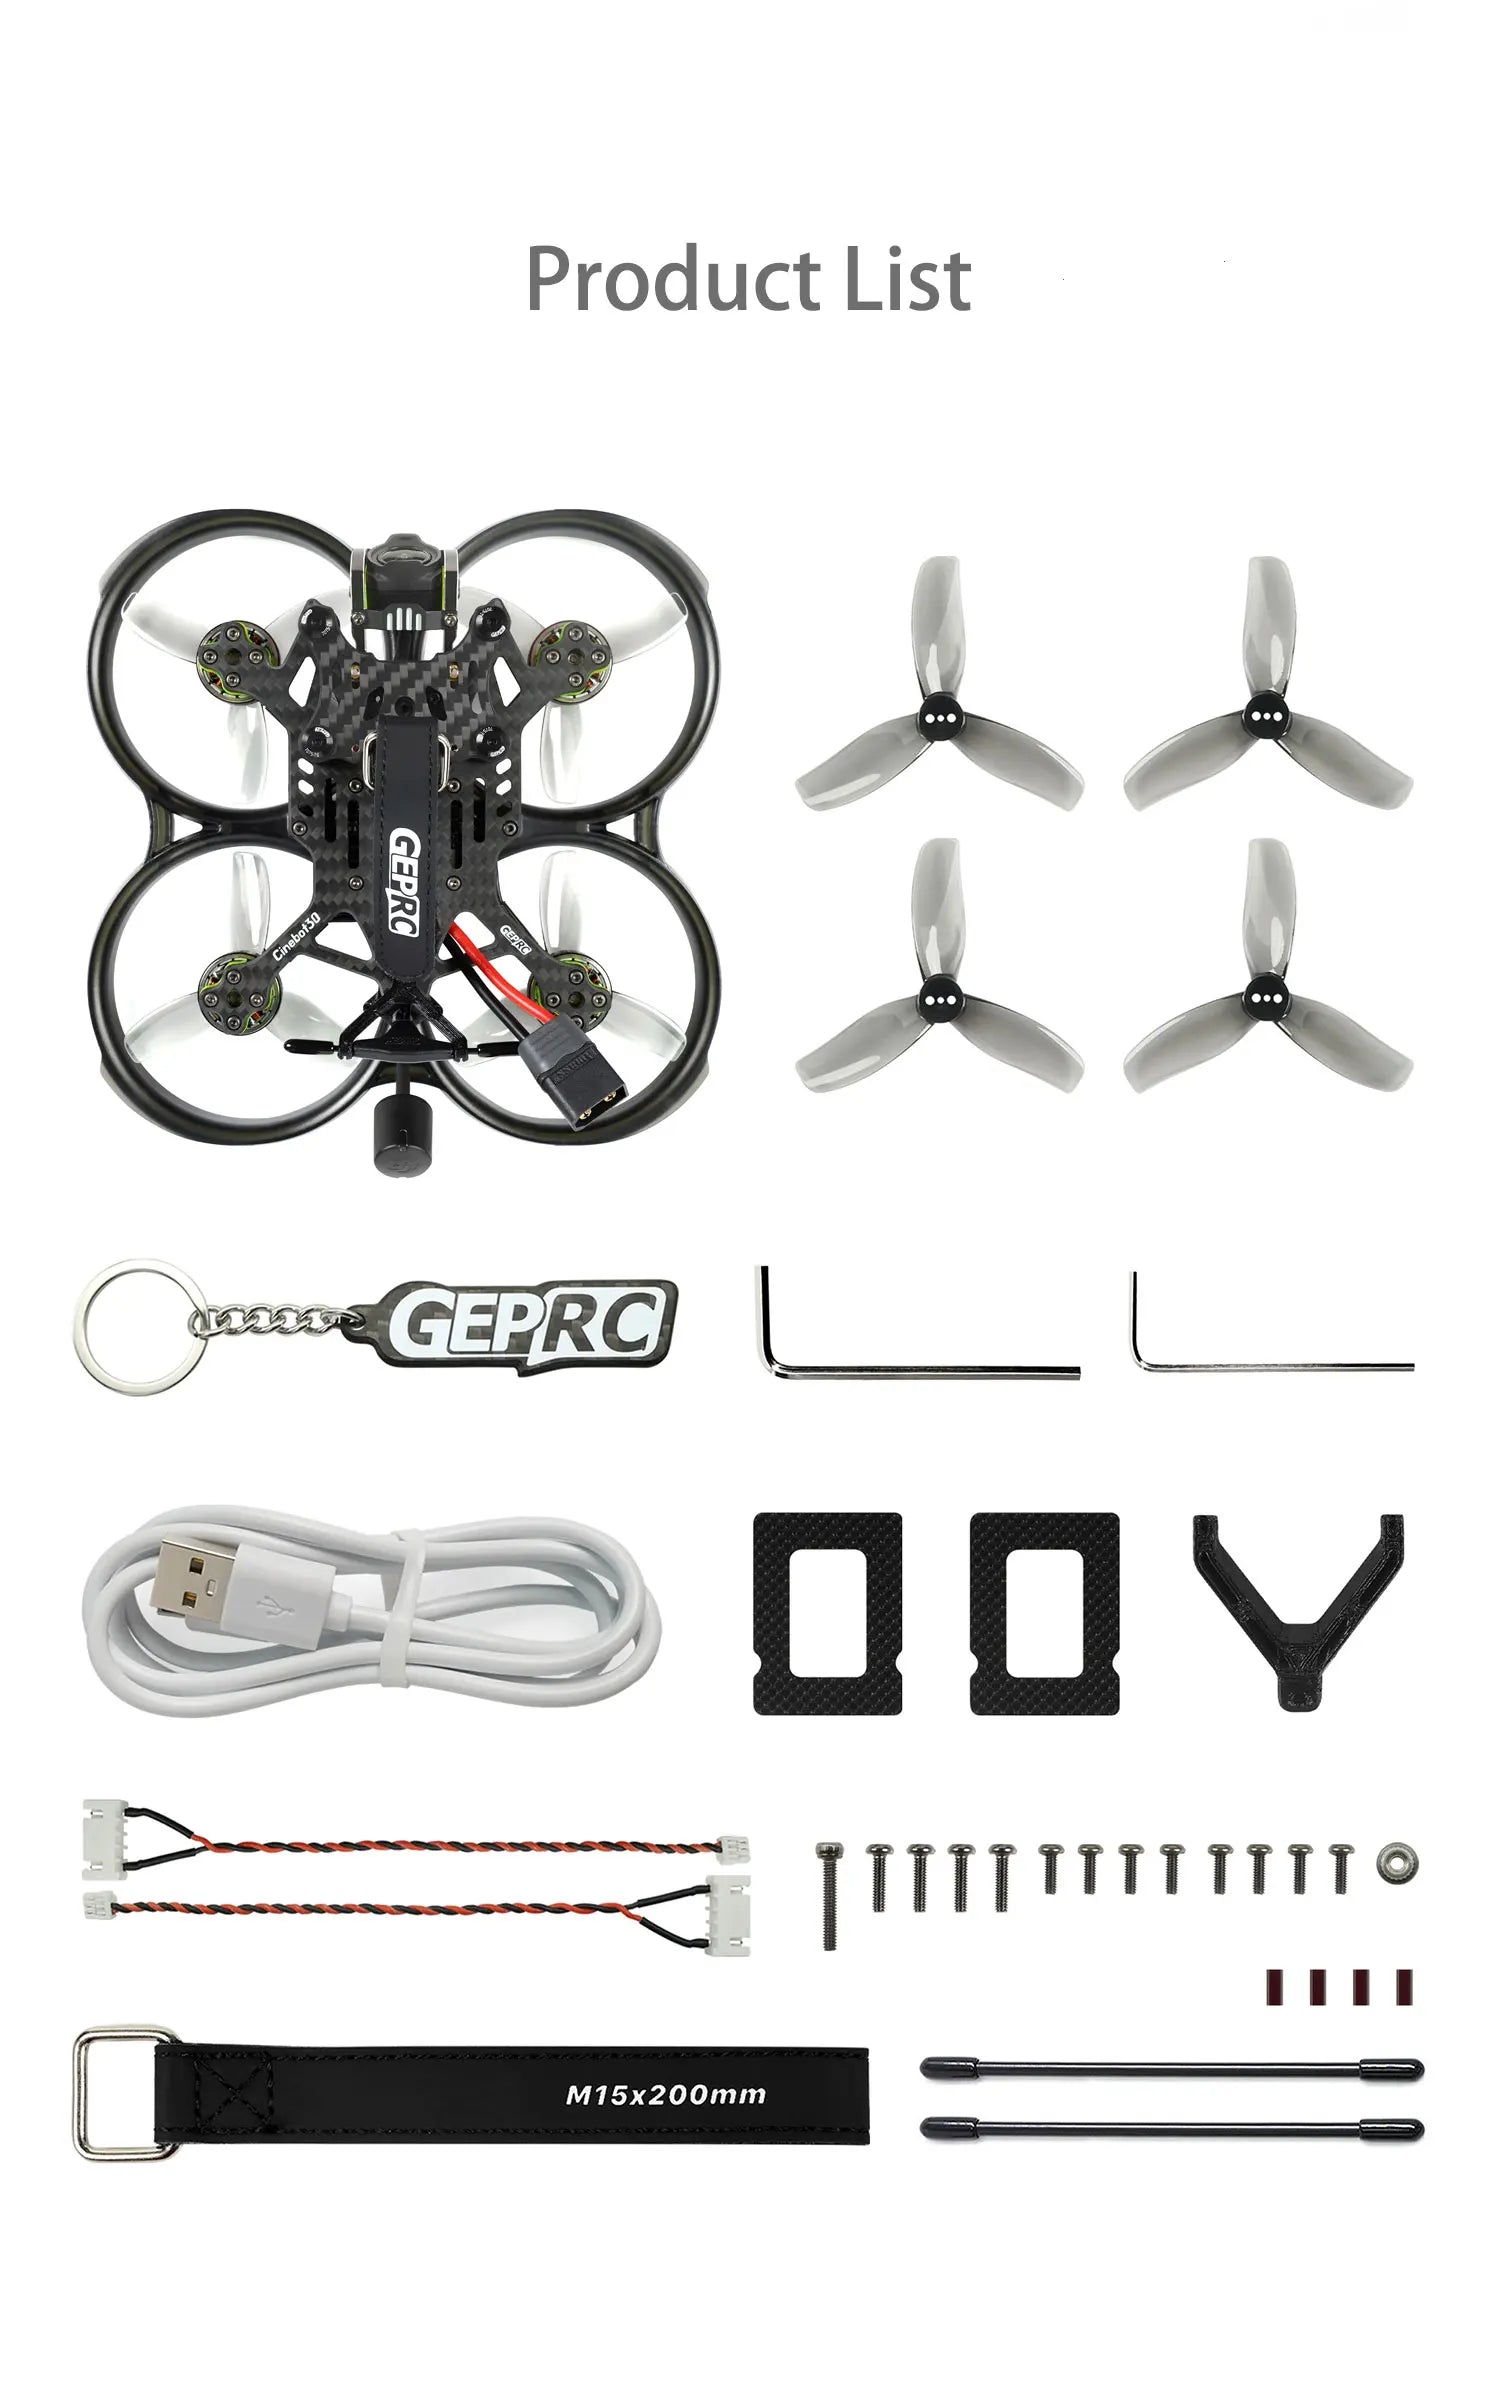 GEPRC Cinebot30 FPV Drone, Product List 2 ( GEPRO L d0v [TTTTTTTTTT